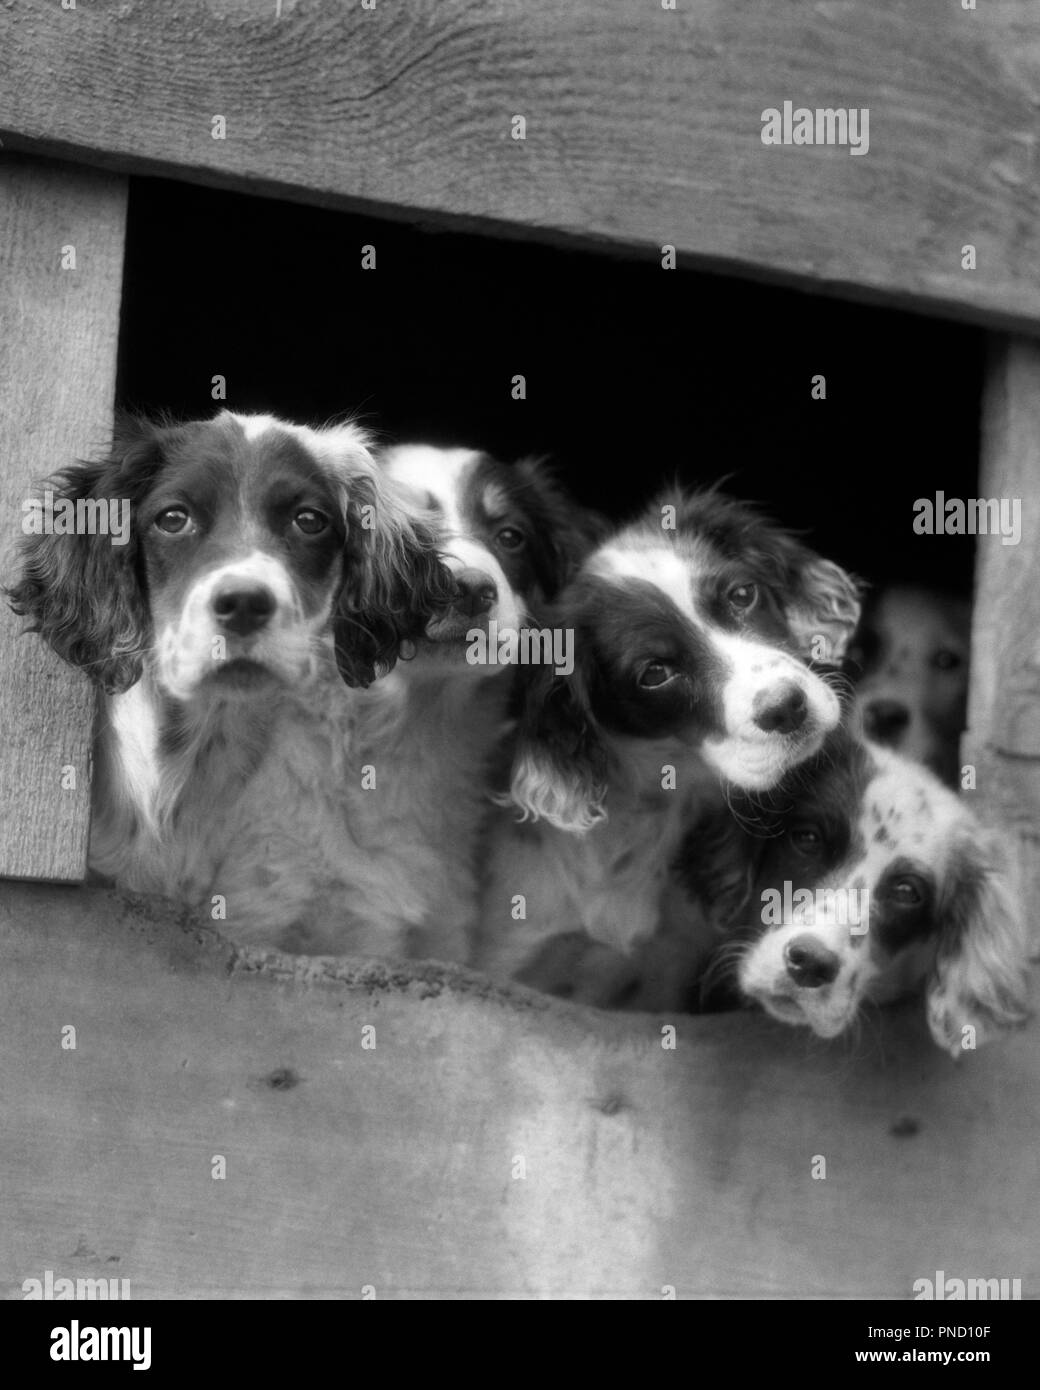 Anni Venti anni trenta cinque cani Setter inglese cuccioli con teste sporgenti di apertura nel canile guardando la fotocamera - d2090 HAR001 HARS ESTERNO SPERANZOSO SETTER CUCCIOLI BLOCCATA IN OCCASIONE DELLA CONNESSIONE POOCH affollamento close-up curioso elegante DARLING CHE VOGLIONO CANINE LONESOME mammifero convivere adorabili attraente IN BIANCO E NERO HAR001 curiosi di vecchio stile Foto Stock